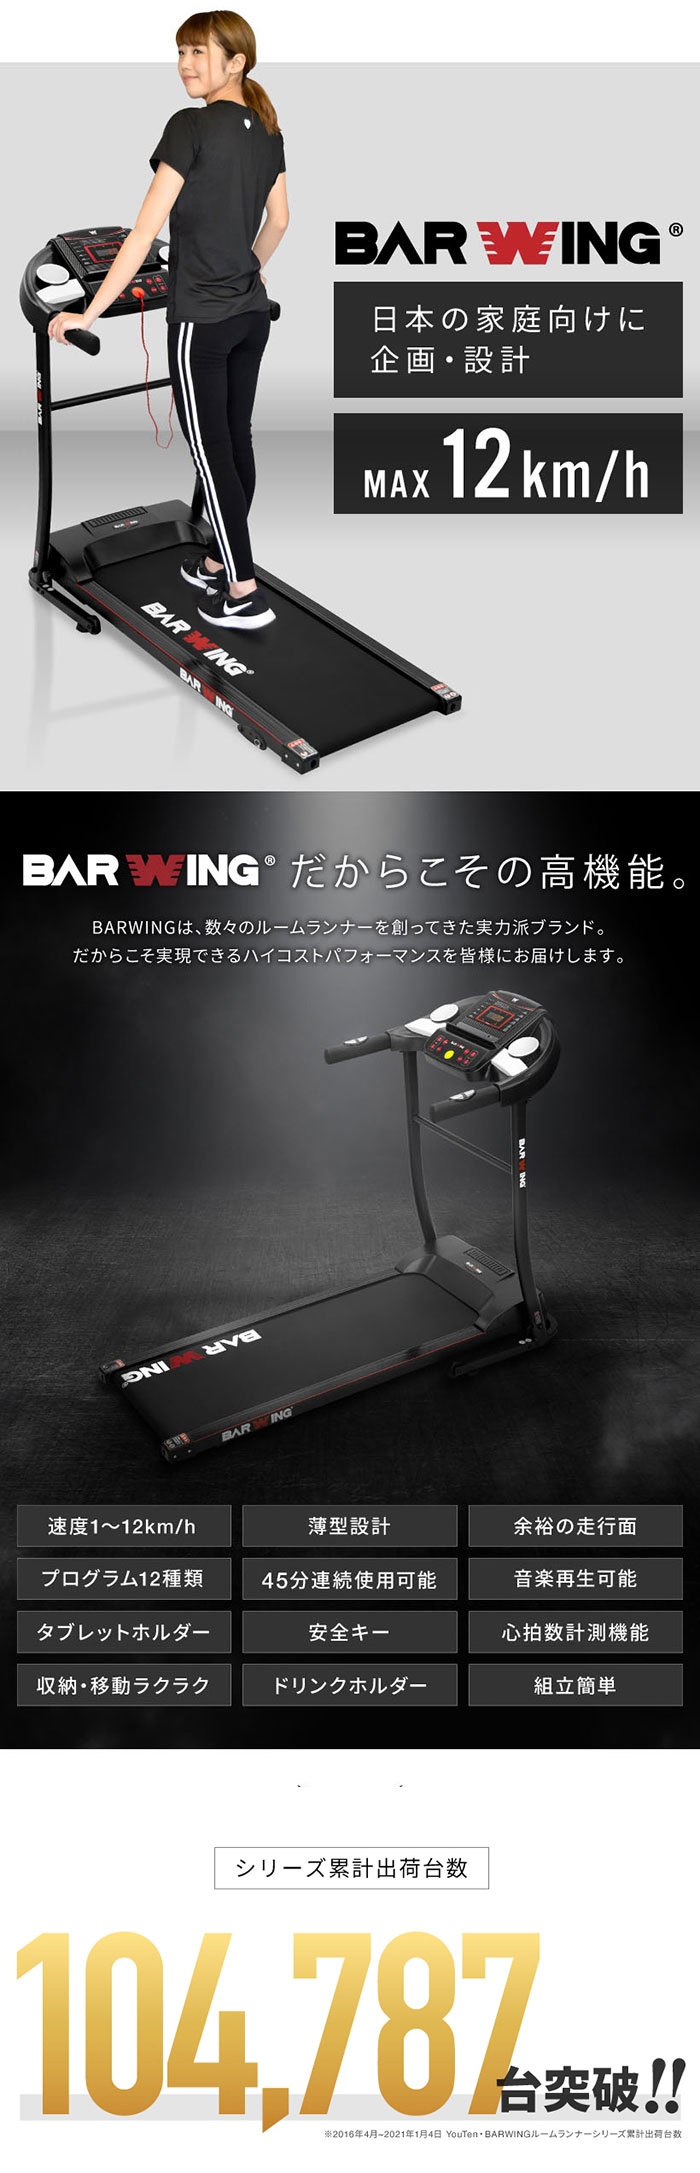 BARWING 自走式 トレッドミル ルームランナー - トレーニング用品